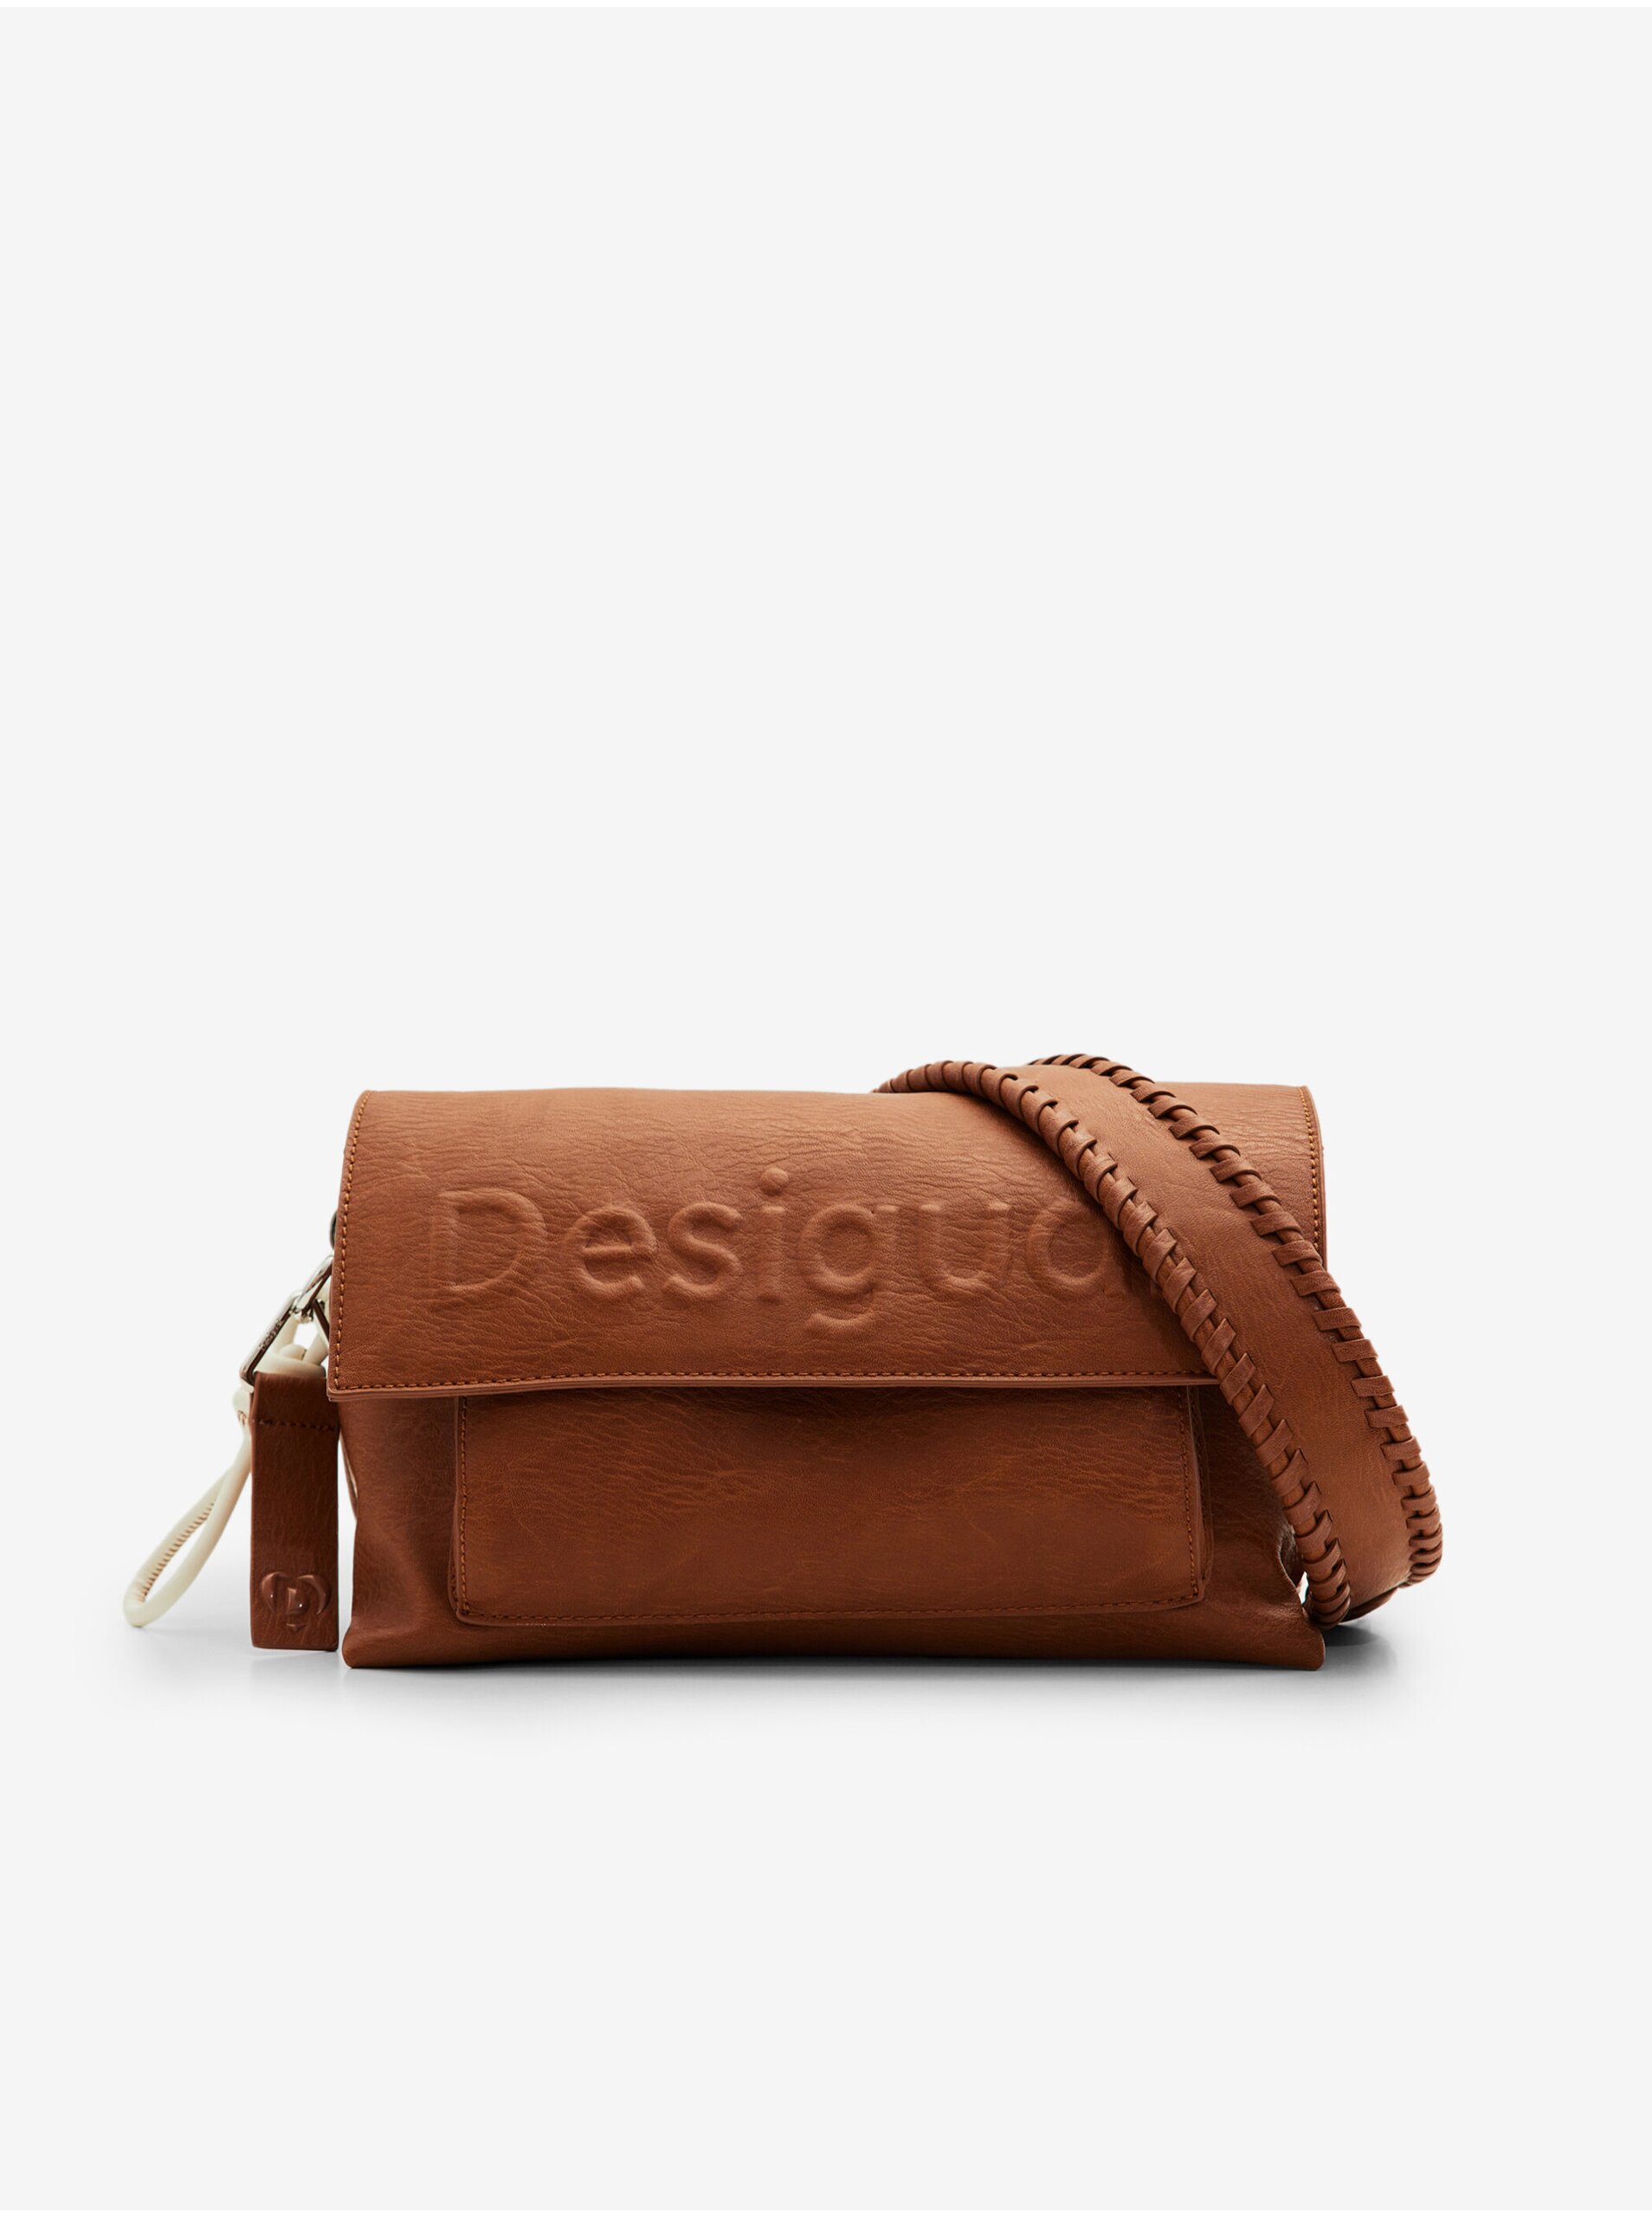 Women's brown handbag Desigual Venecia 2.0 - Women